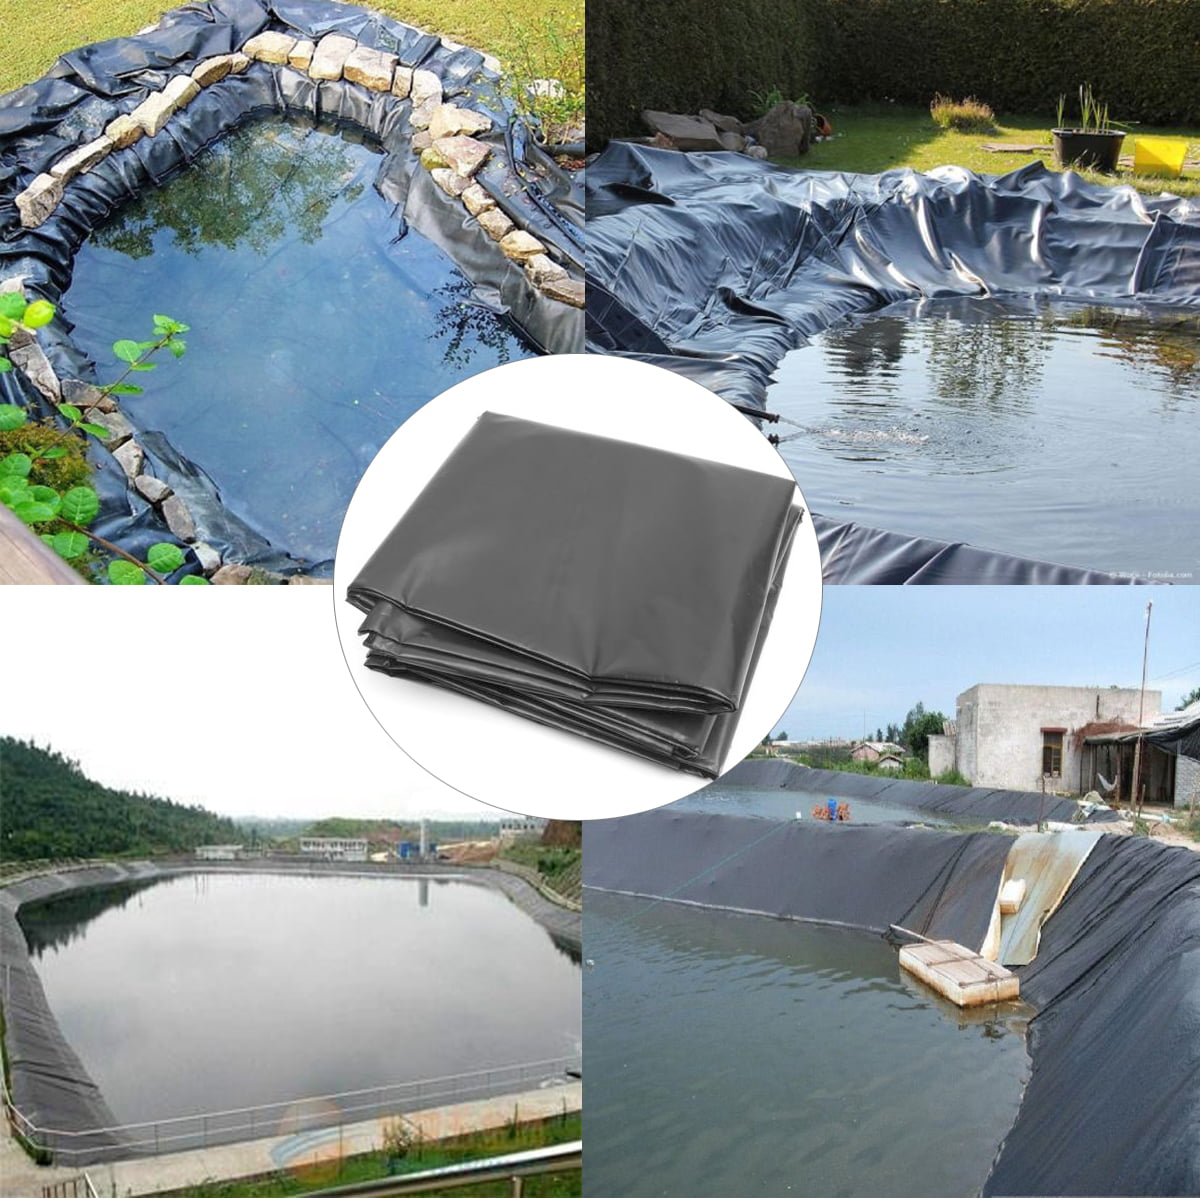 16*16ft Black Fish Pool Pond Liner Membrane Reinforced Gardens Pools Landscaping 